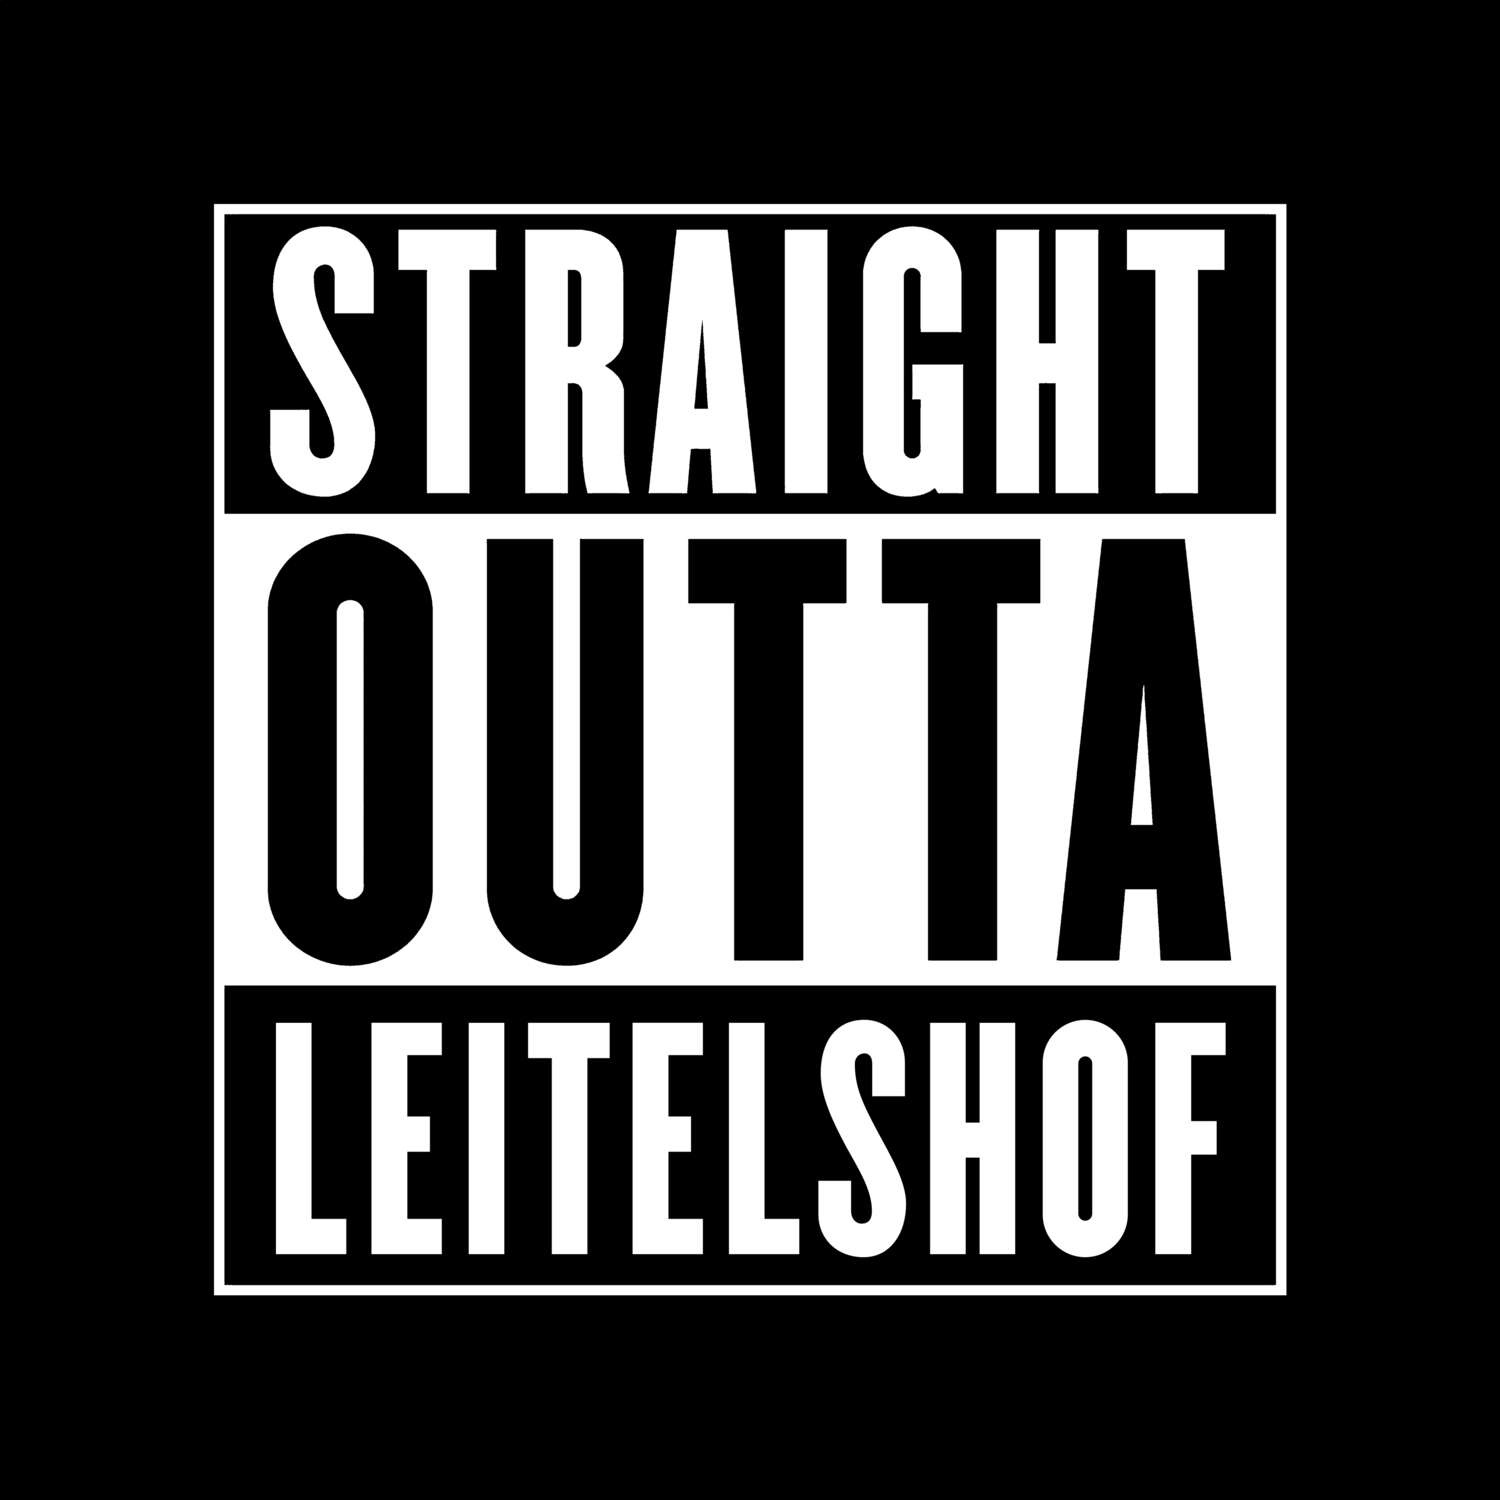 Leitelshof T-Shirt »Straight Outta«